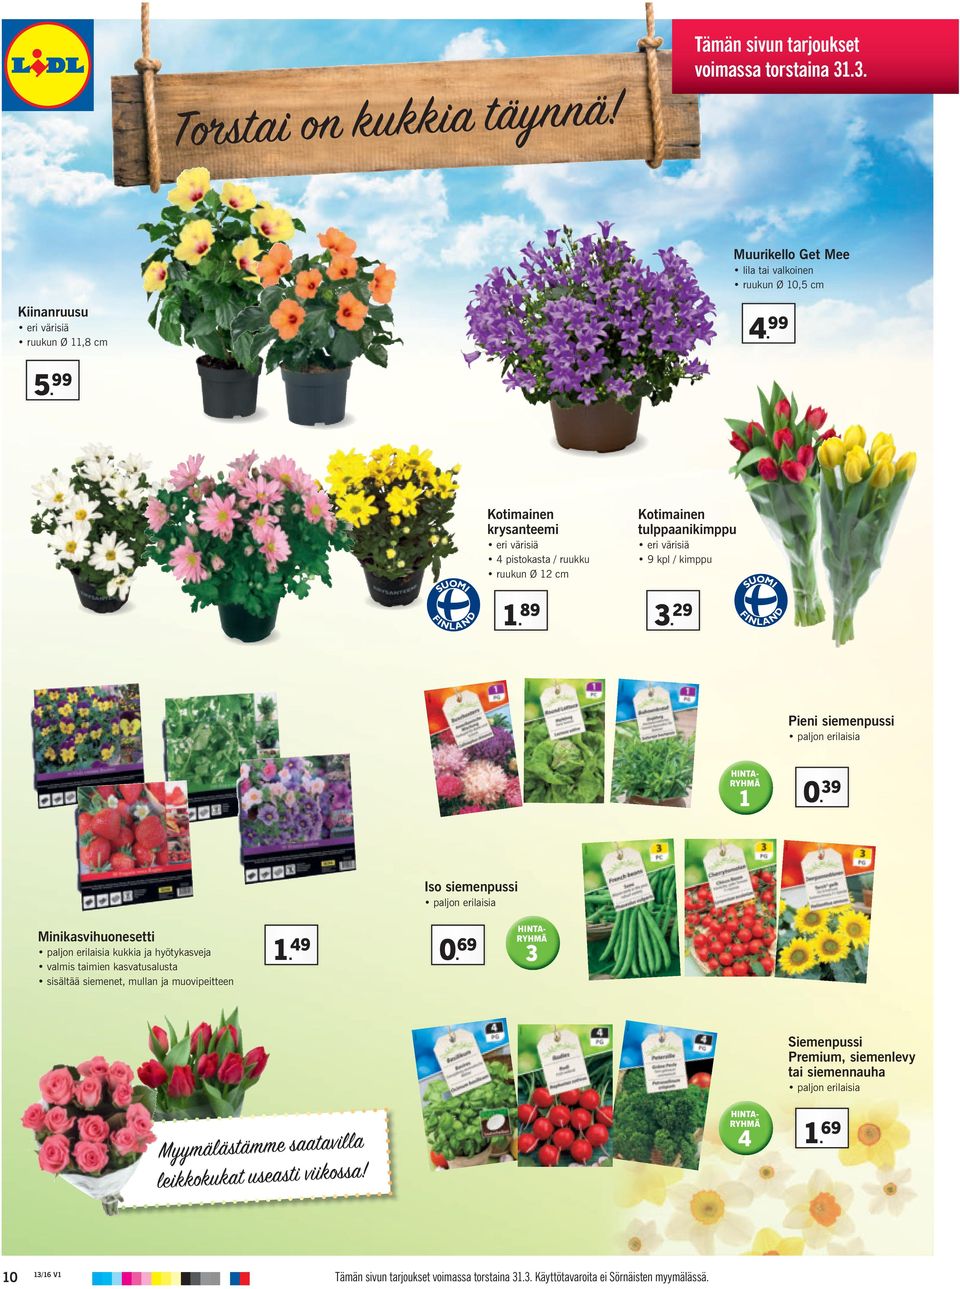 39 Iso siemenpussi paljon erilaisia Minikasvihuonesetti paljon erilaisia kukkia ja hyötykasveja valmis taimien kasvatusalusta sisältää siemenet, mullan ja muovipeitteen 1. 49 0.